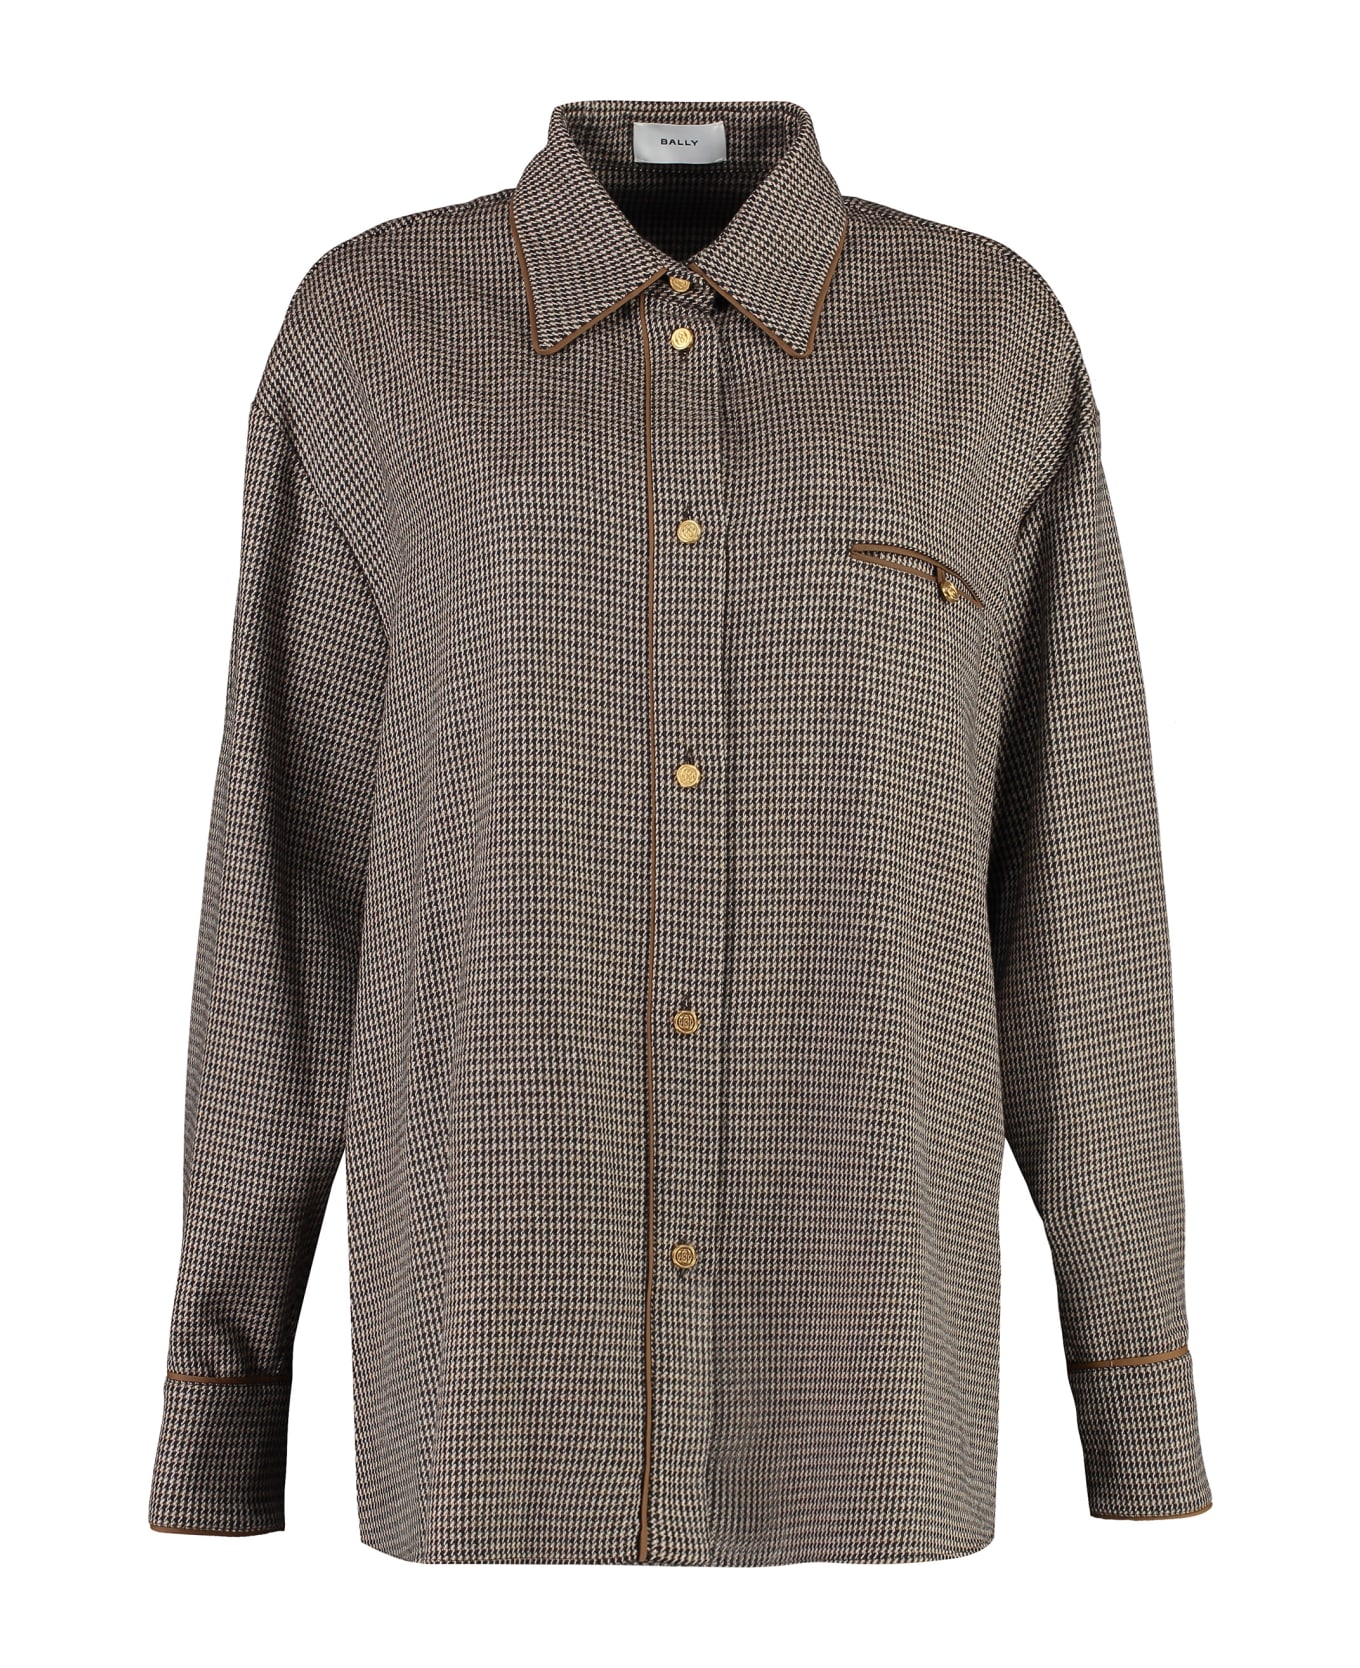 Bally Long Sleeve Wool Blend Shirt - Brown